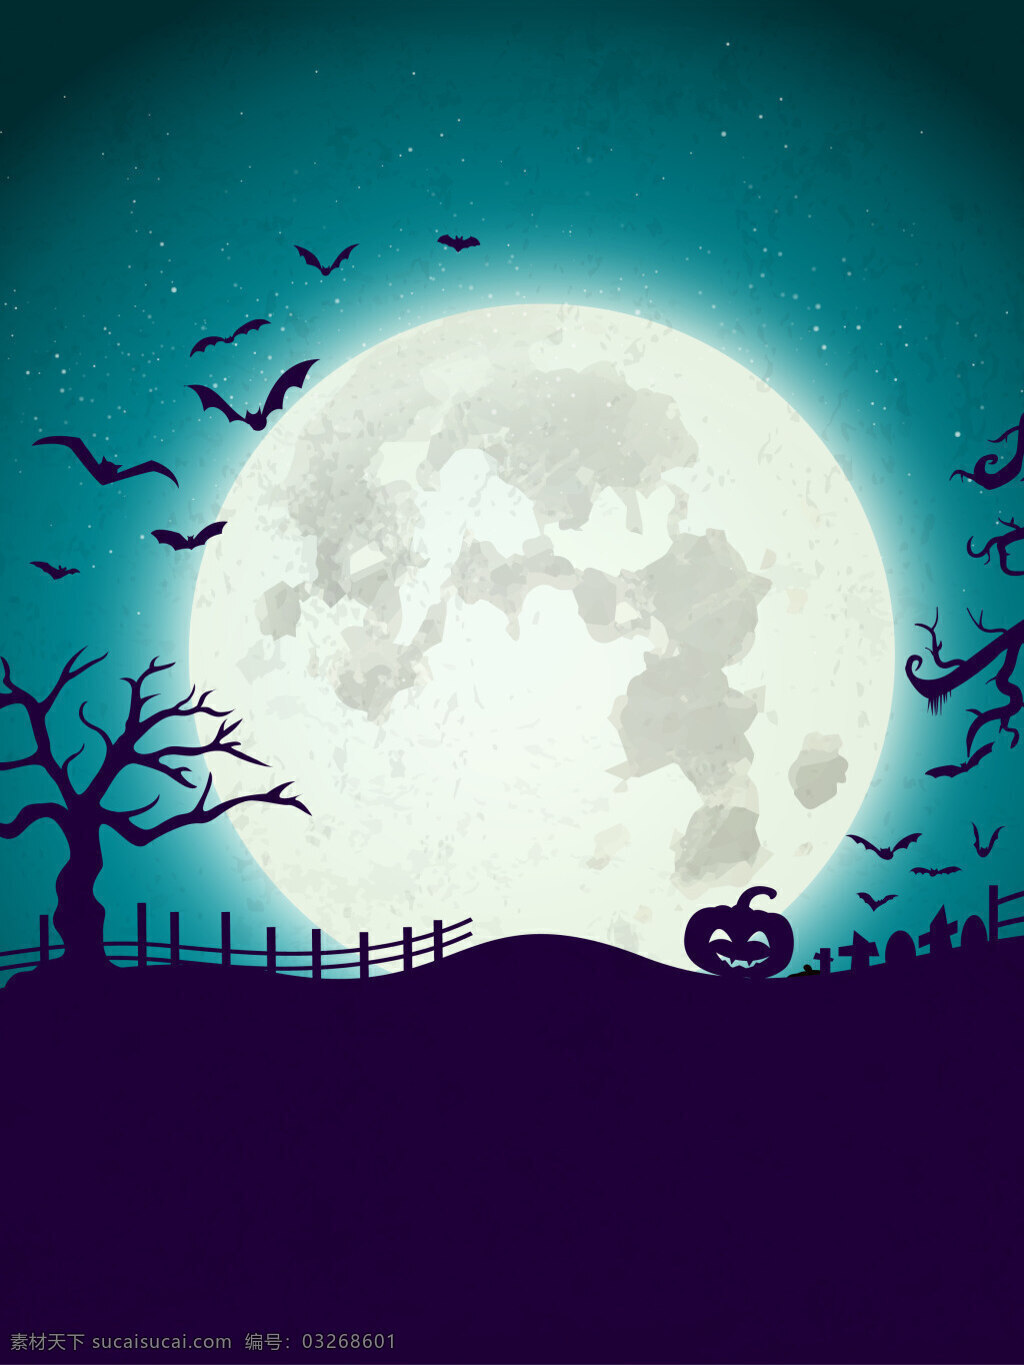 恐怖 万圣 夜 背景 广告 蝙蝠 海报 枯树 模板 墓地 南瓜灯 平面 矢量 万圣节